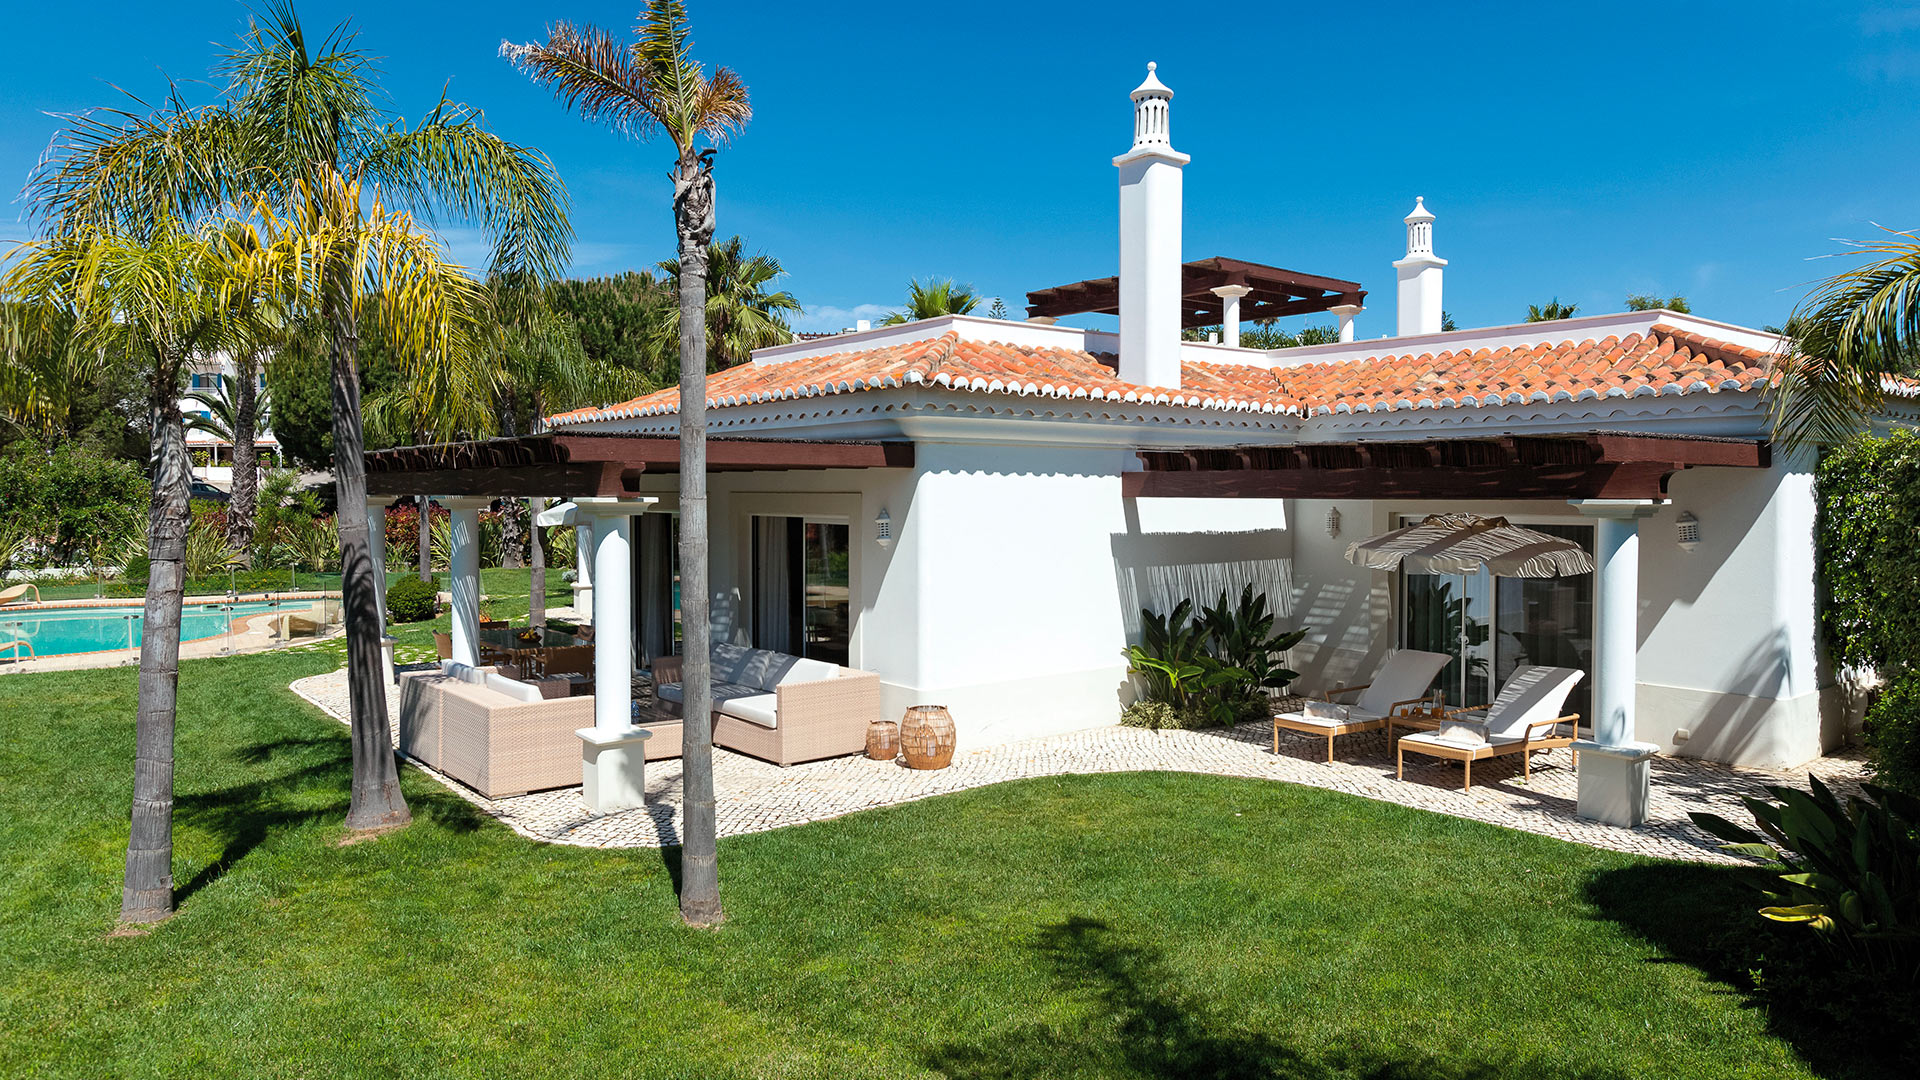 Villa Villa Florival, Rental in Algarve